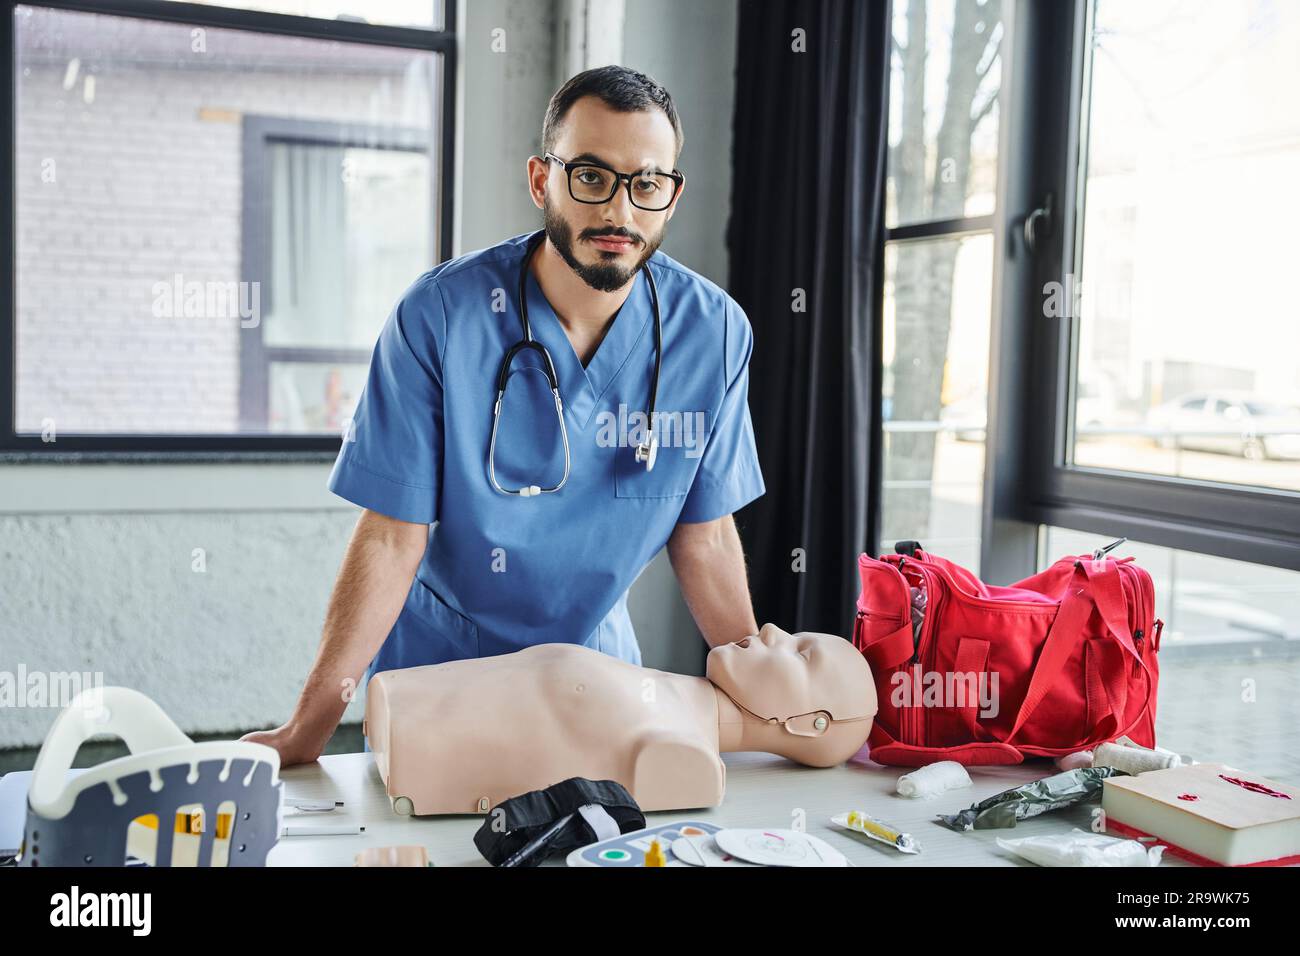 Paramedico barbuto con occhiali da vista e uniforme blu che guarda la telecamera vicino al manichino per RCP, borsa di pronto soccorso rossa, defibrillatore e supporto per il collo nella sala di addestramento, Foto Stock